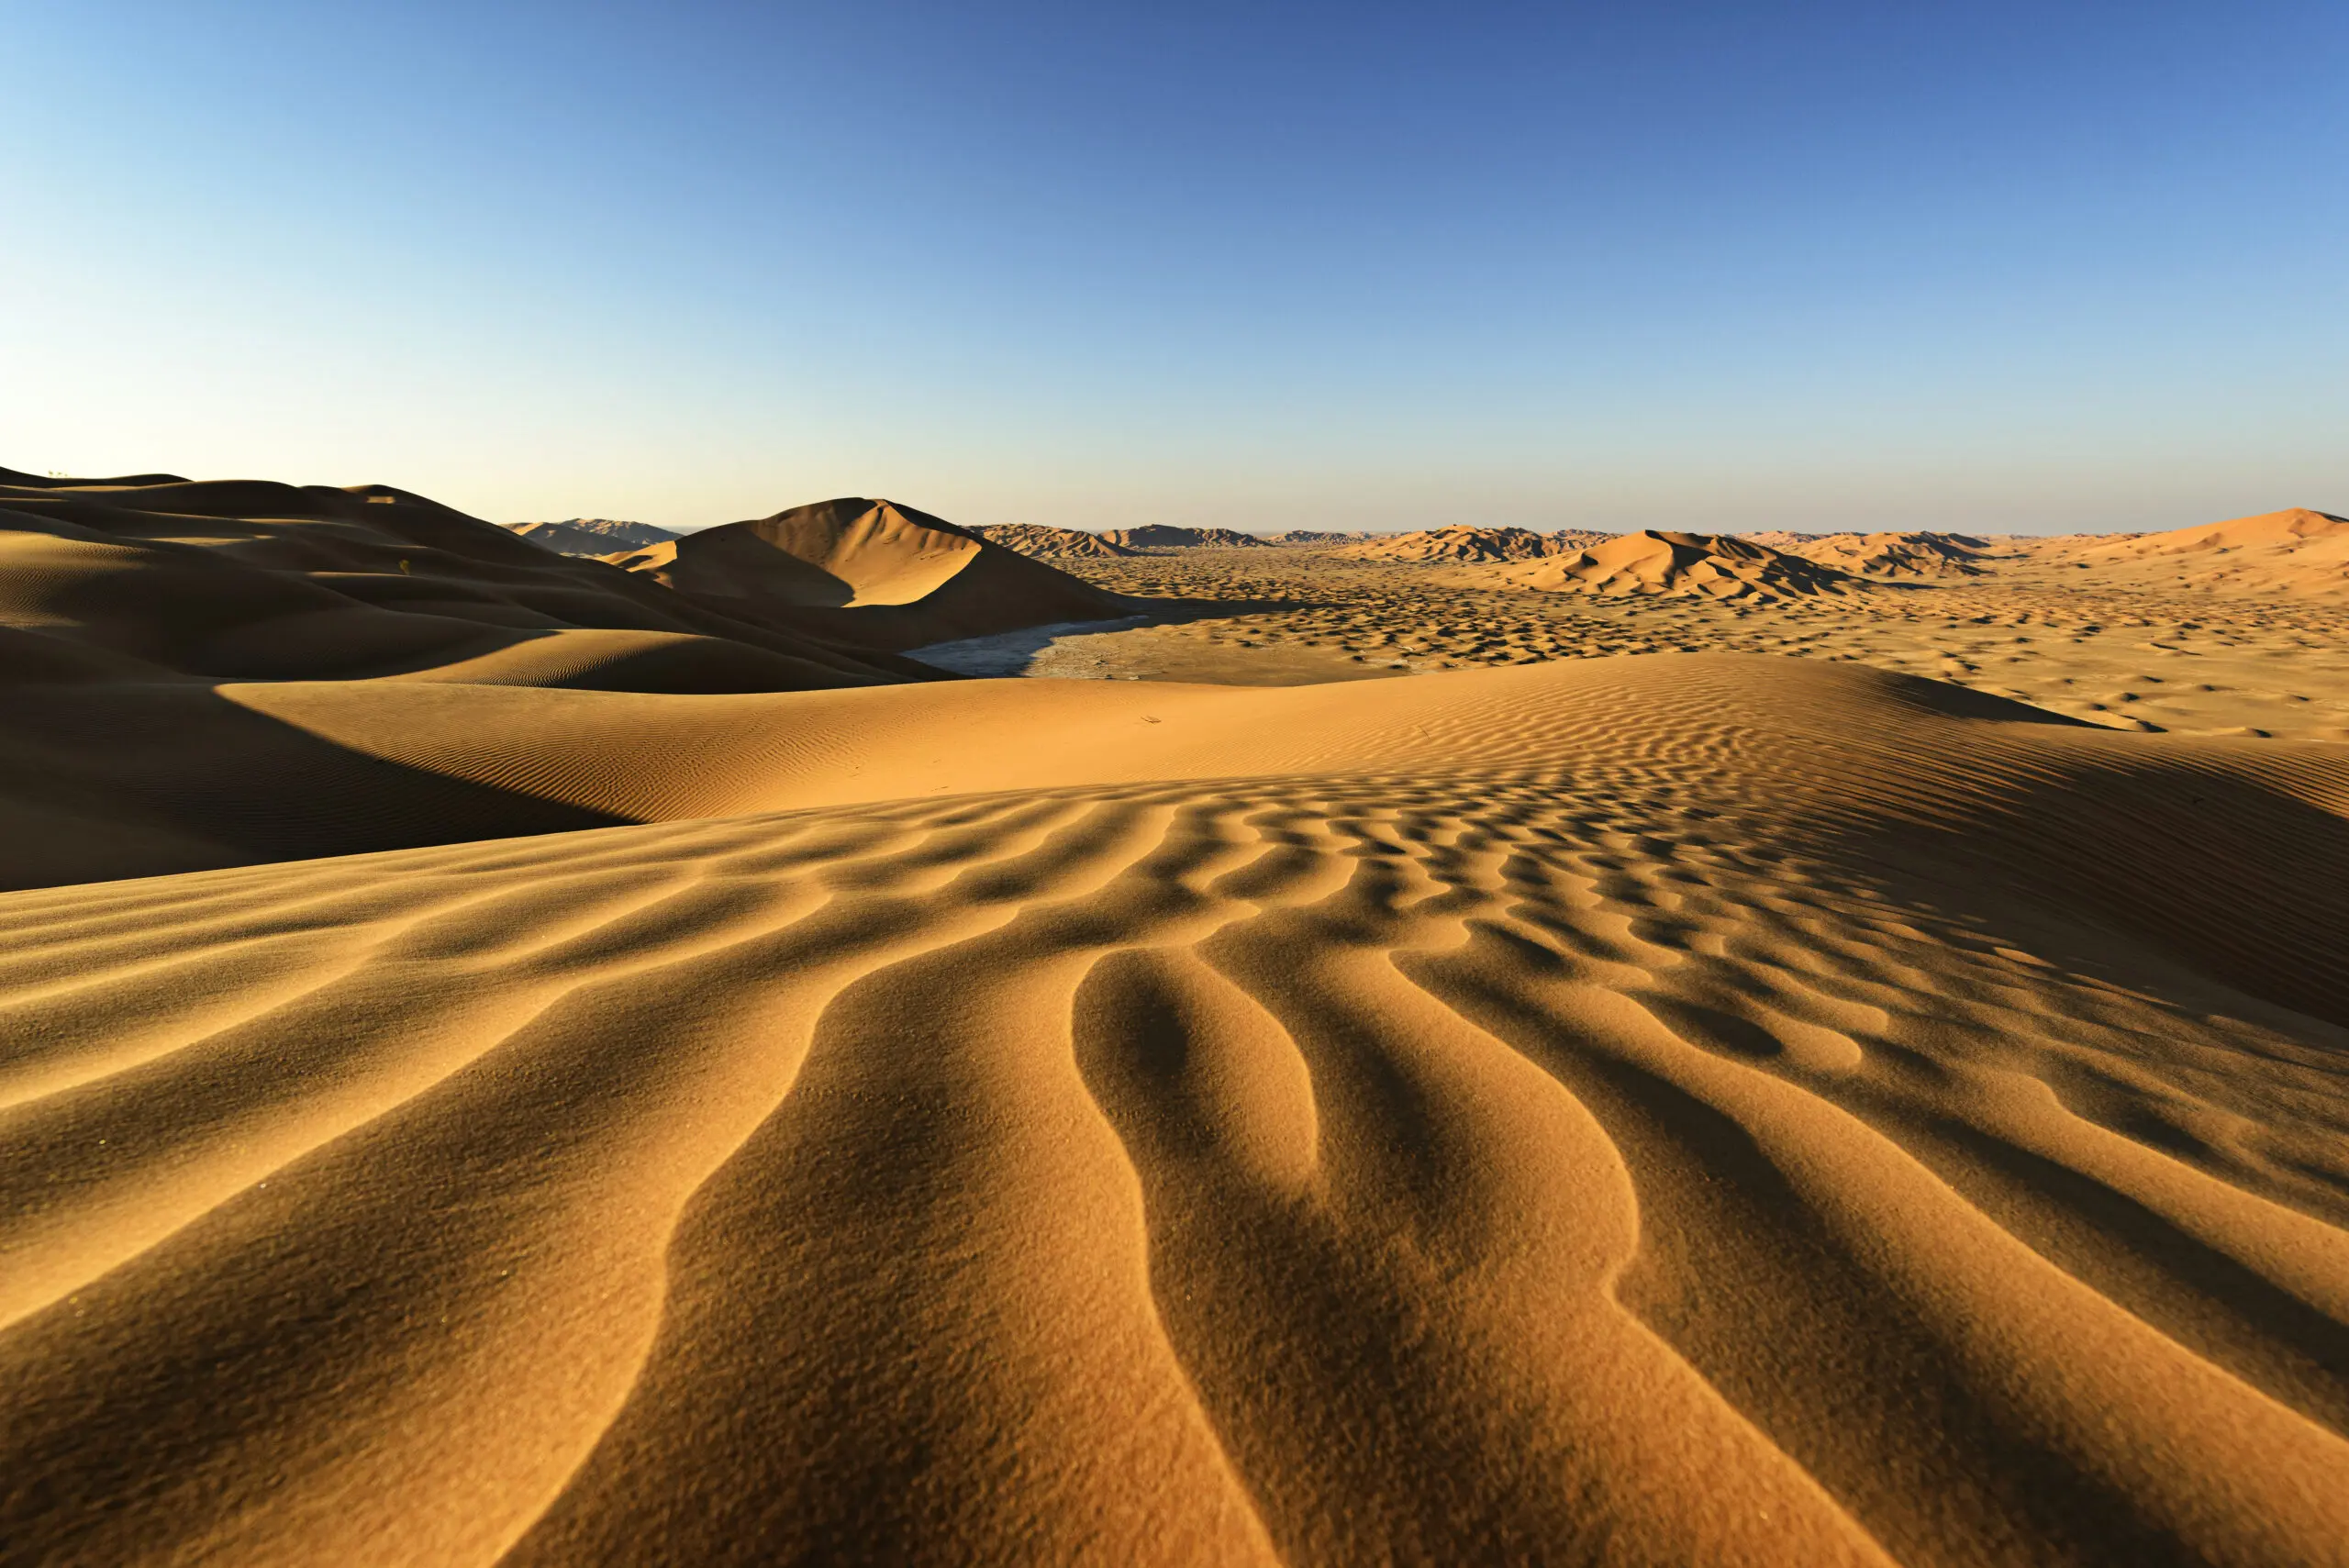 Wandbild (4684) Robertz Mark – Wüste Rub al-Chali im Morgenlicht präsentiert: Details und Strukturen,Natur,Landschaften,Wüste,Asien,Detailaufnahmen,Luftaufnahmen,Steine,Sonstige Naturdetails,Erde